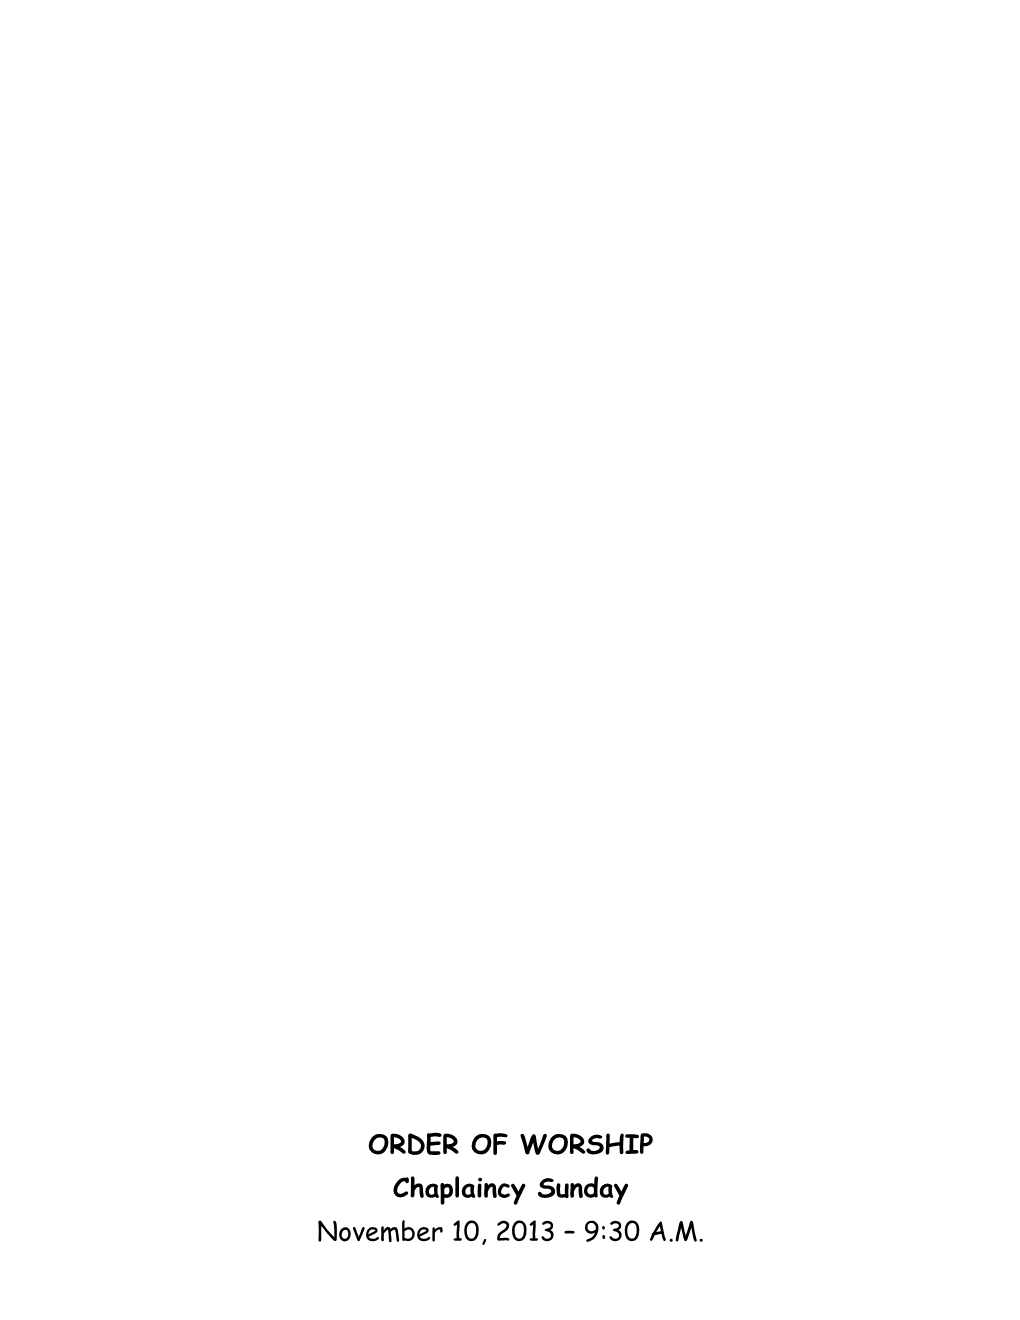 Order of Worship s7